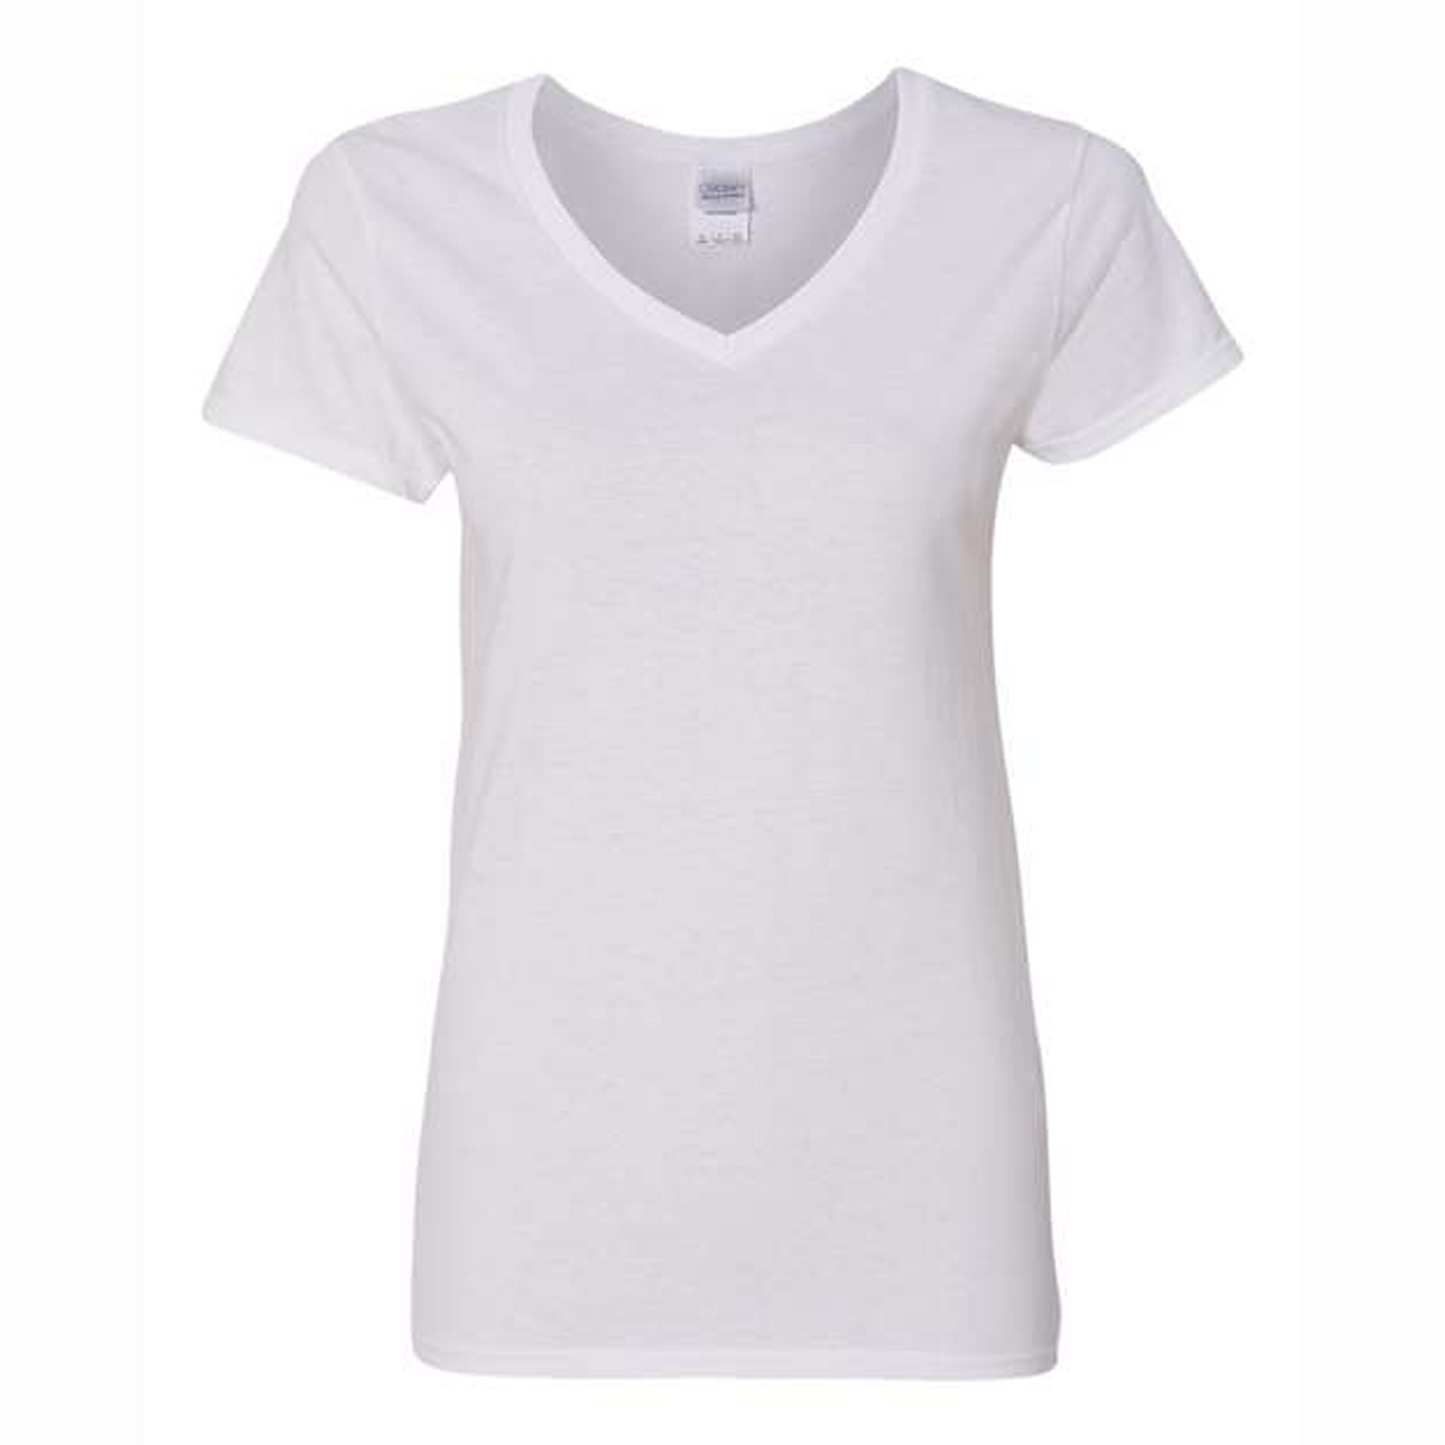 T-shirt - FEMME - Col en V - TEXTE/DESSIN au choix